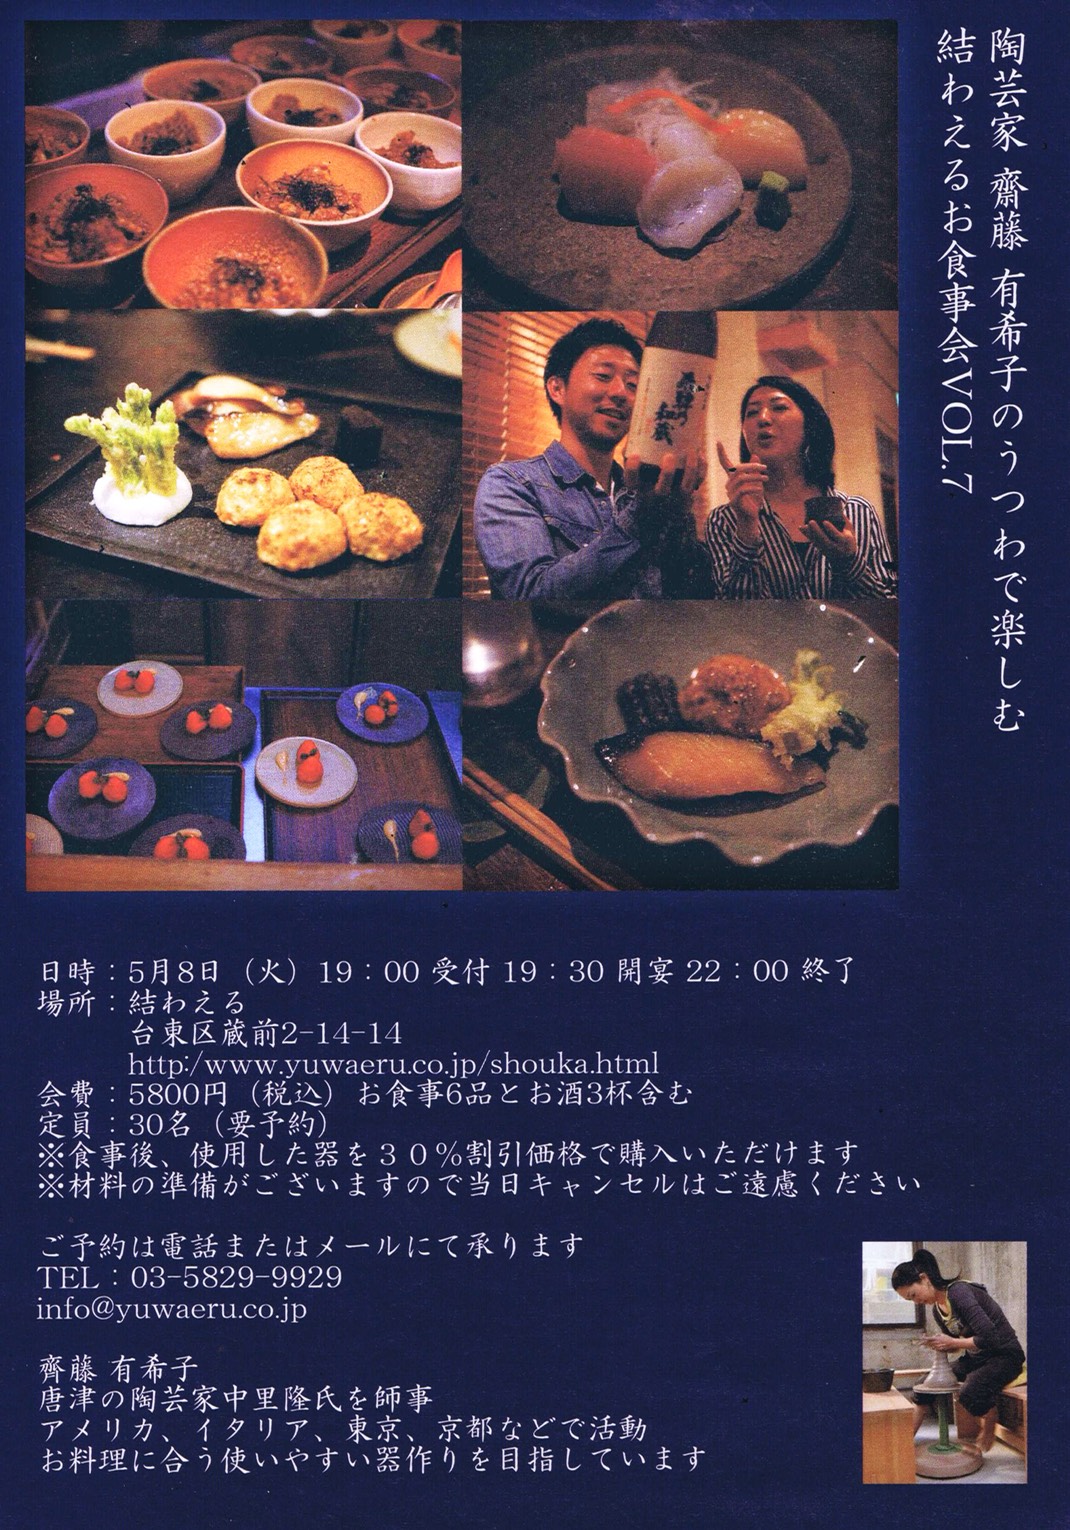 5/8(火) 陶芸家 齋藤 有希子の器で楽しむ結わえるのお食事会 Vol.7